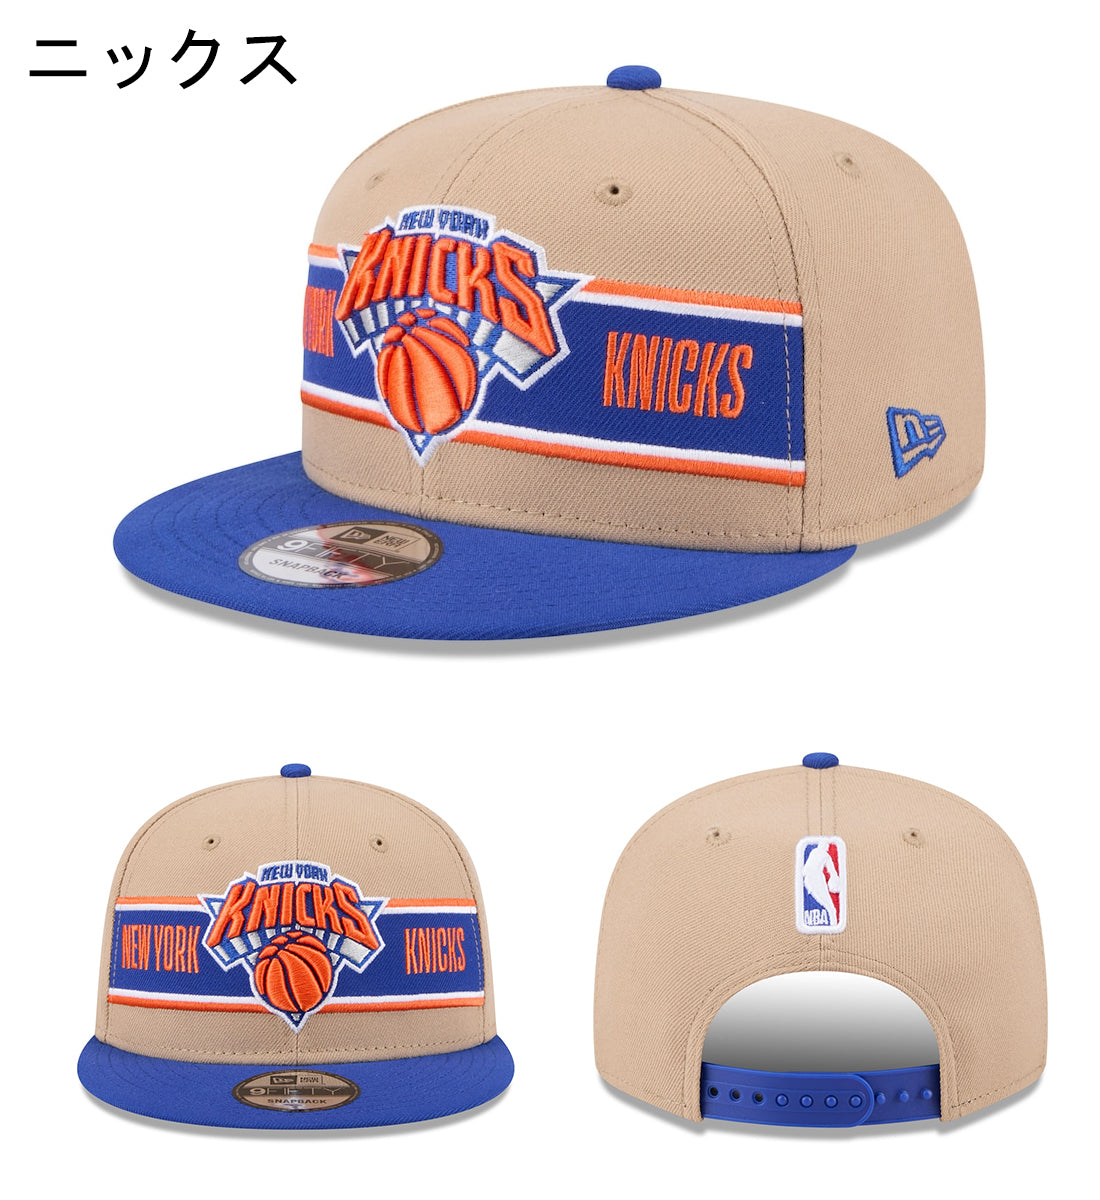 ニューエラ キャップ  9FIFTY 2024 NBA DRAFT SNAPBACK CAP CAMEL